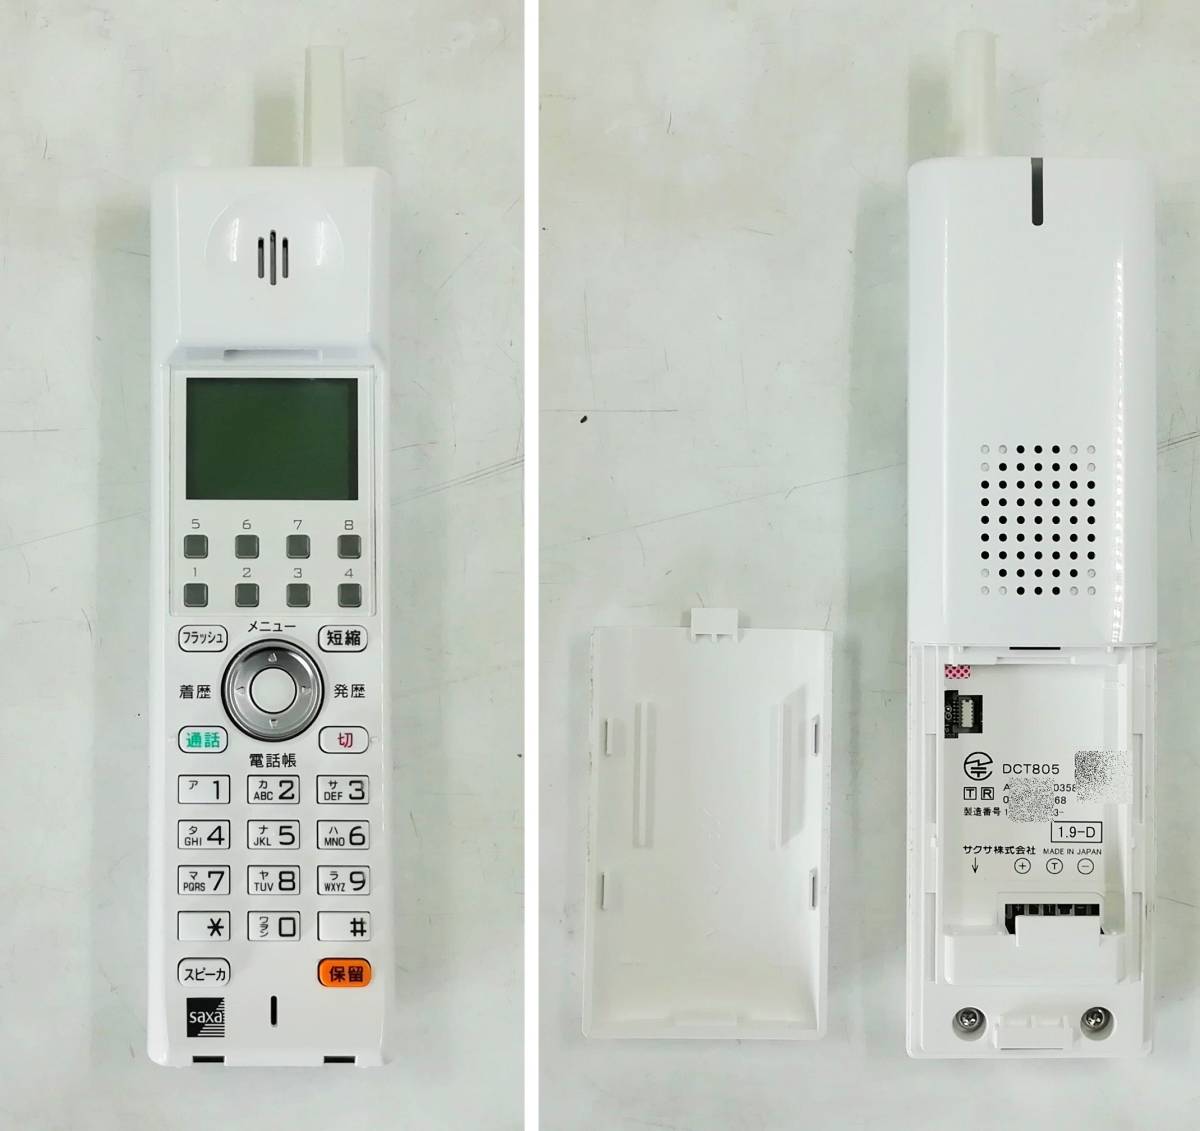 Saxa 主装置 PT1000ⅡStd 電話機 TD820(W)x1台 子機 DCT805ｘ1台セット